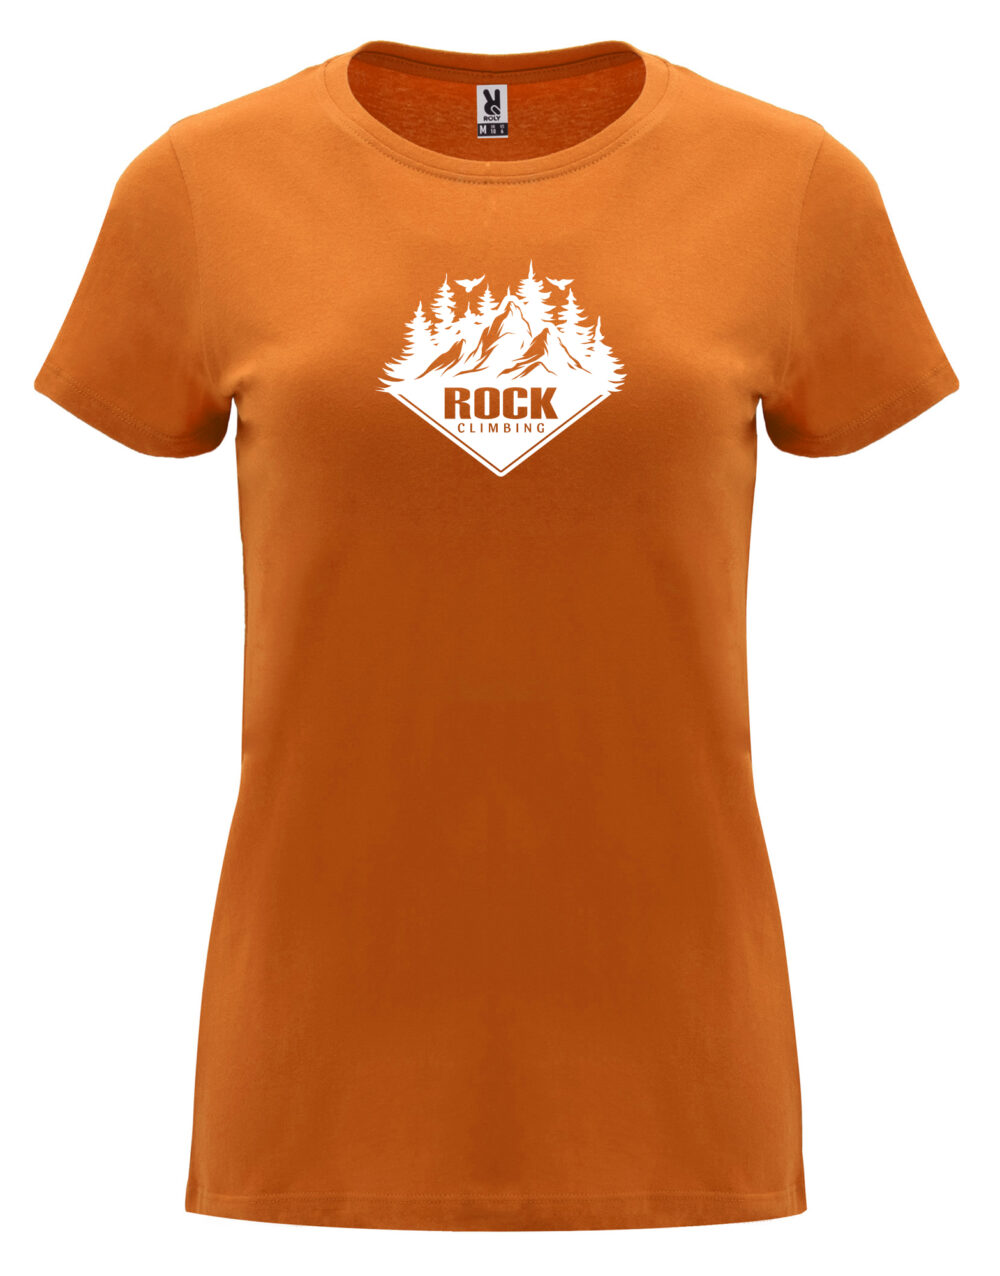 Dámské tričko s potiskem Rock climbing oranžová